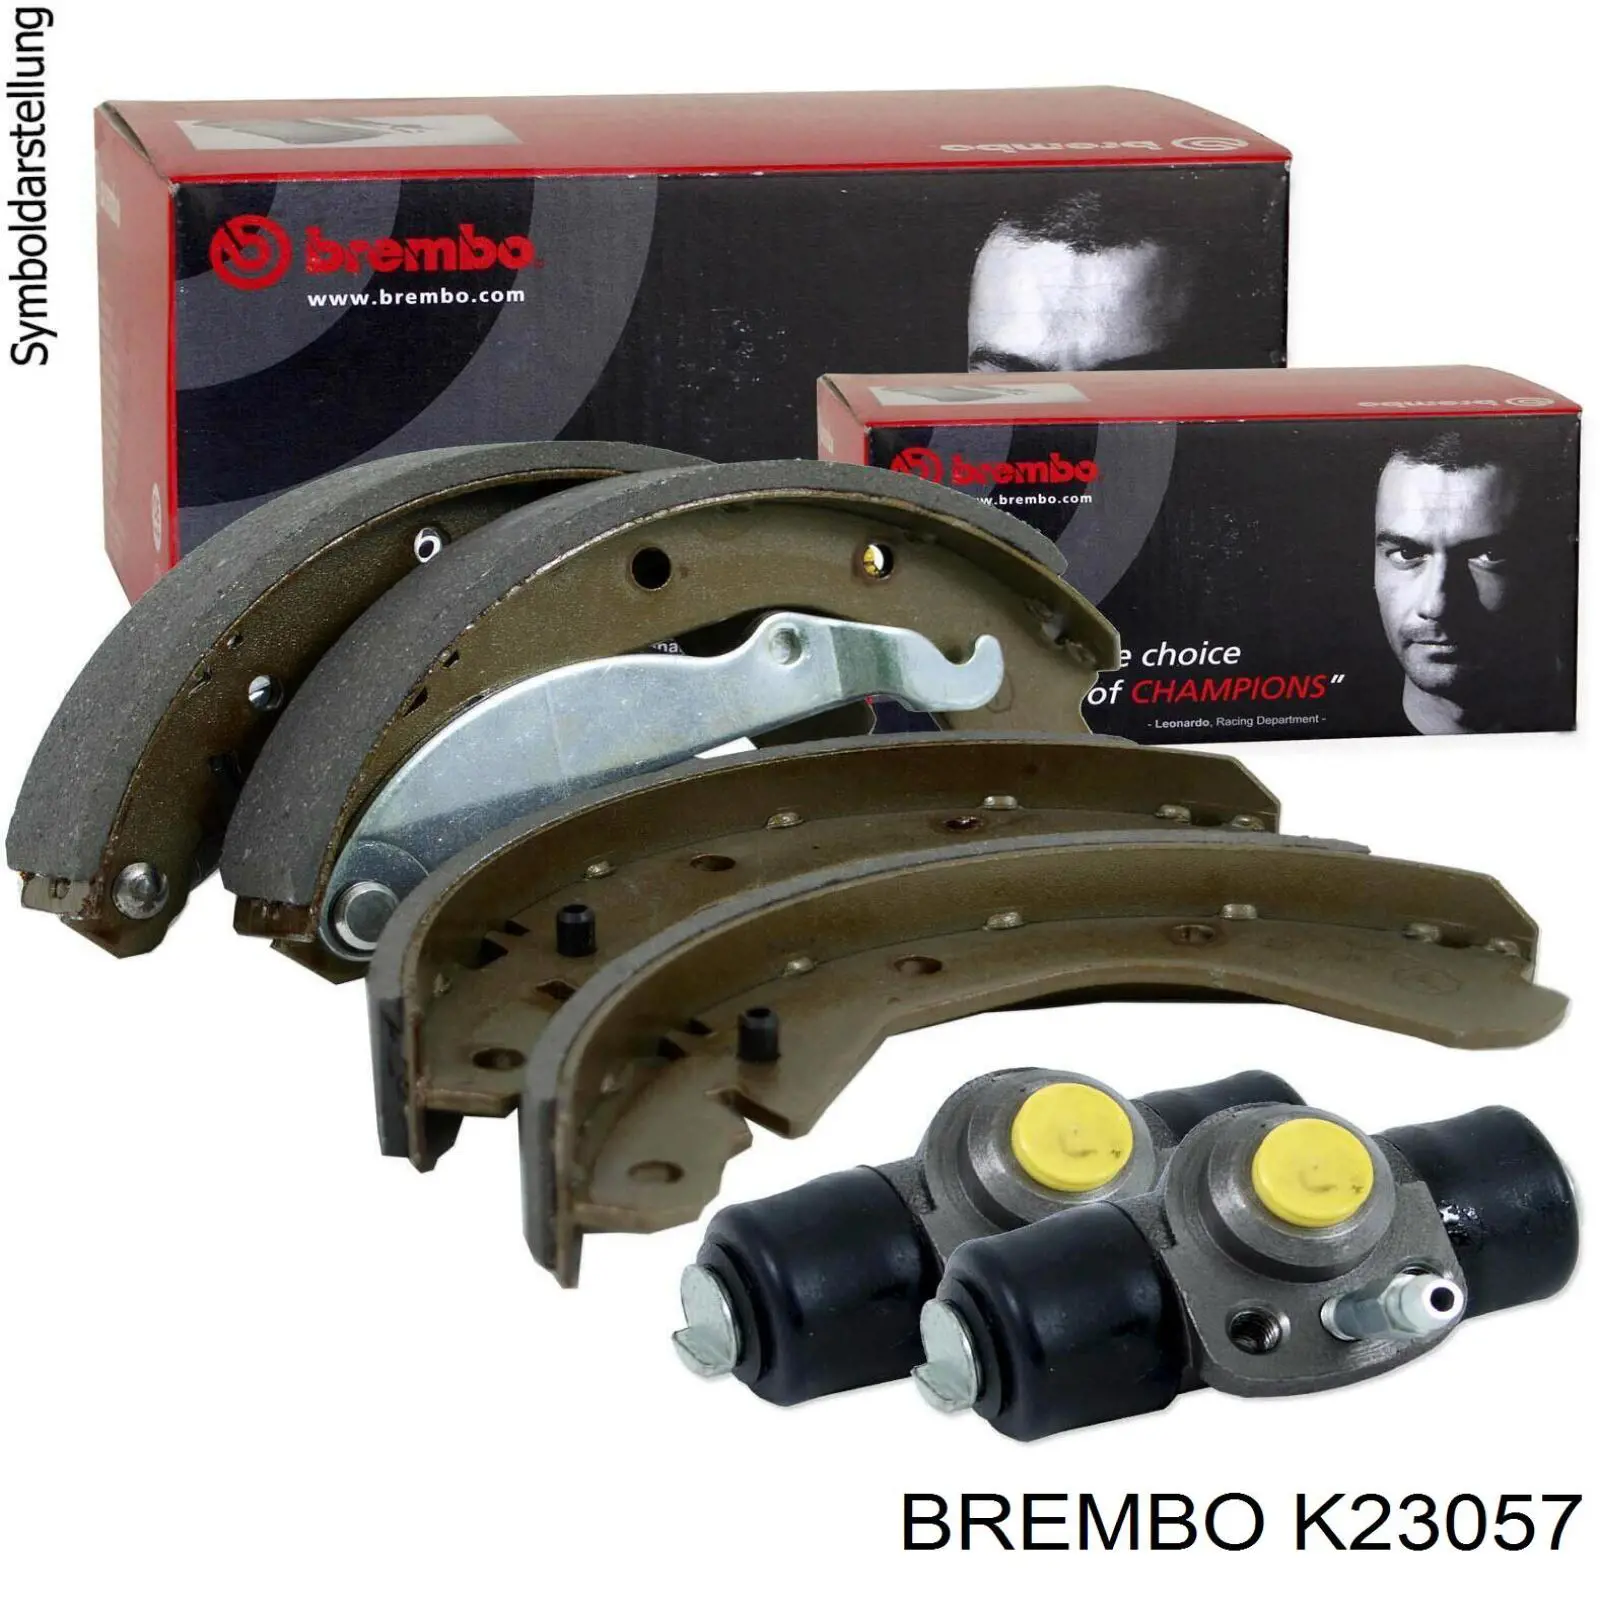 K 23 057 Brembo колодки тормозные задние барабанные, в сборе с цилиндрами, комплект